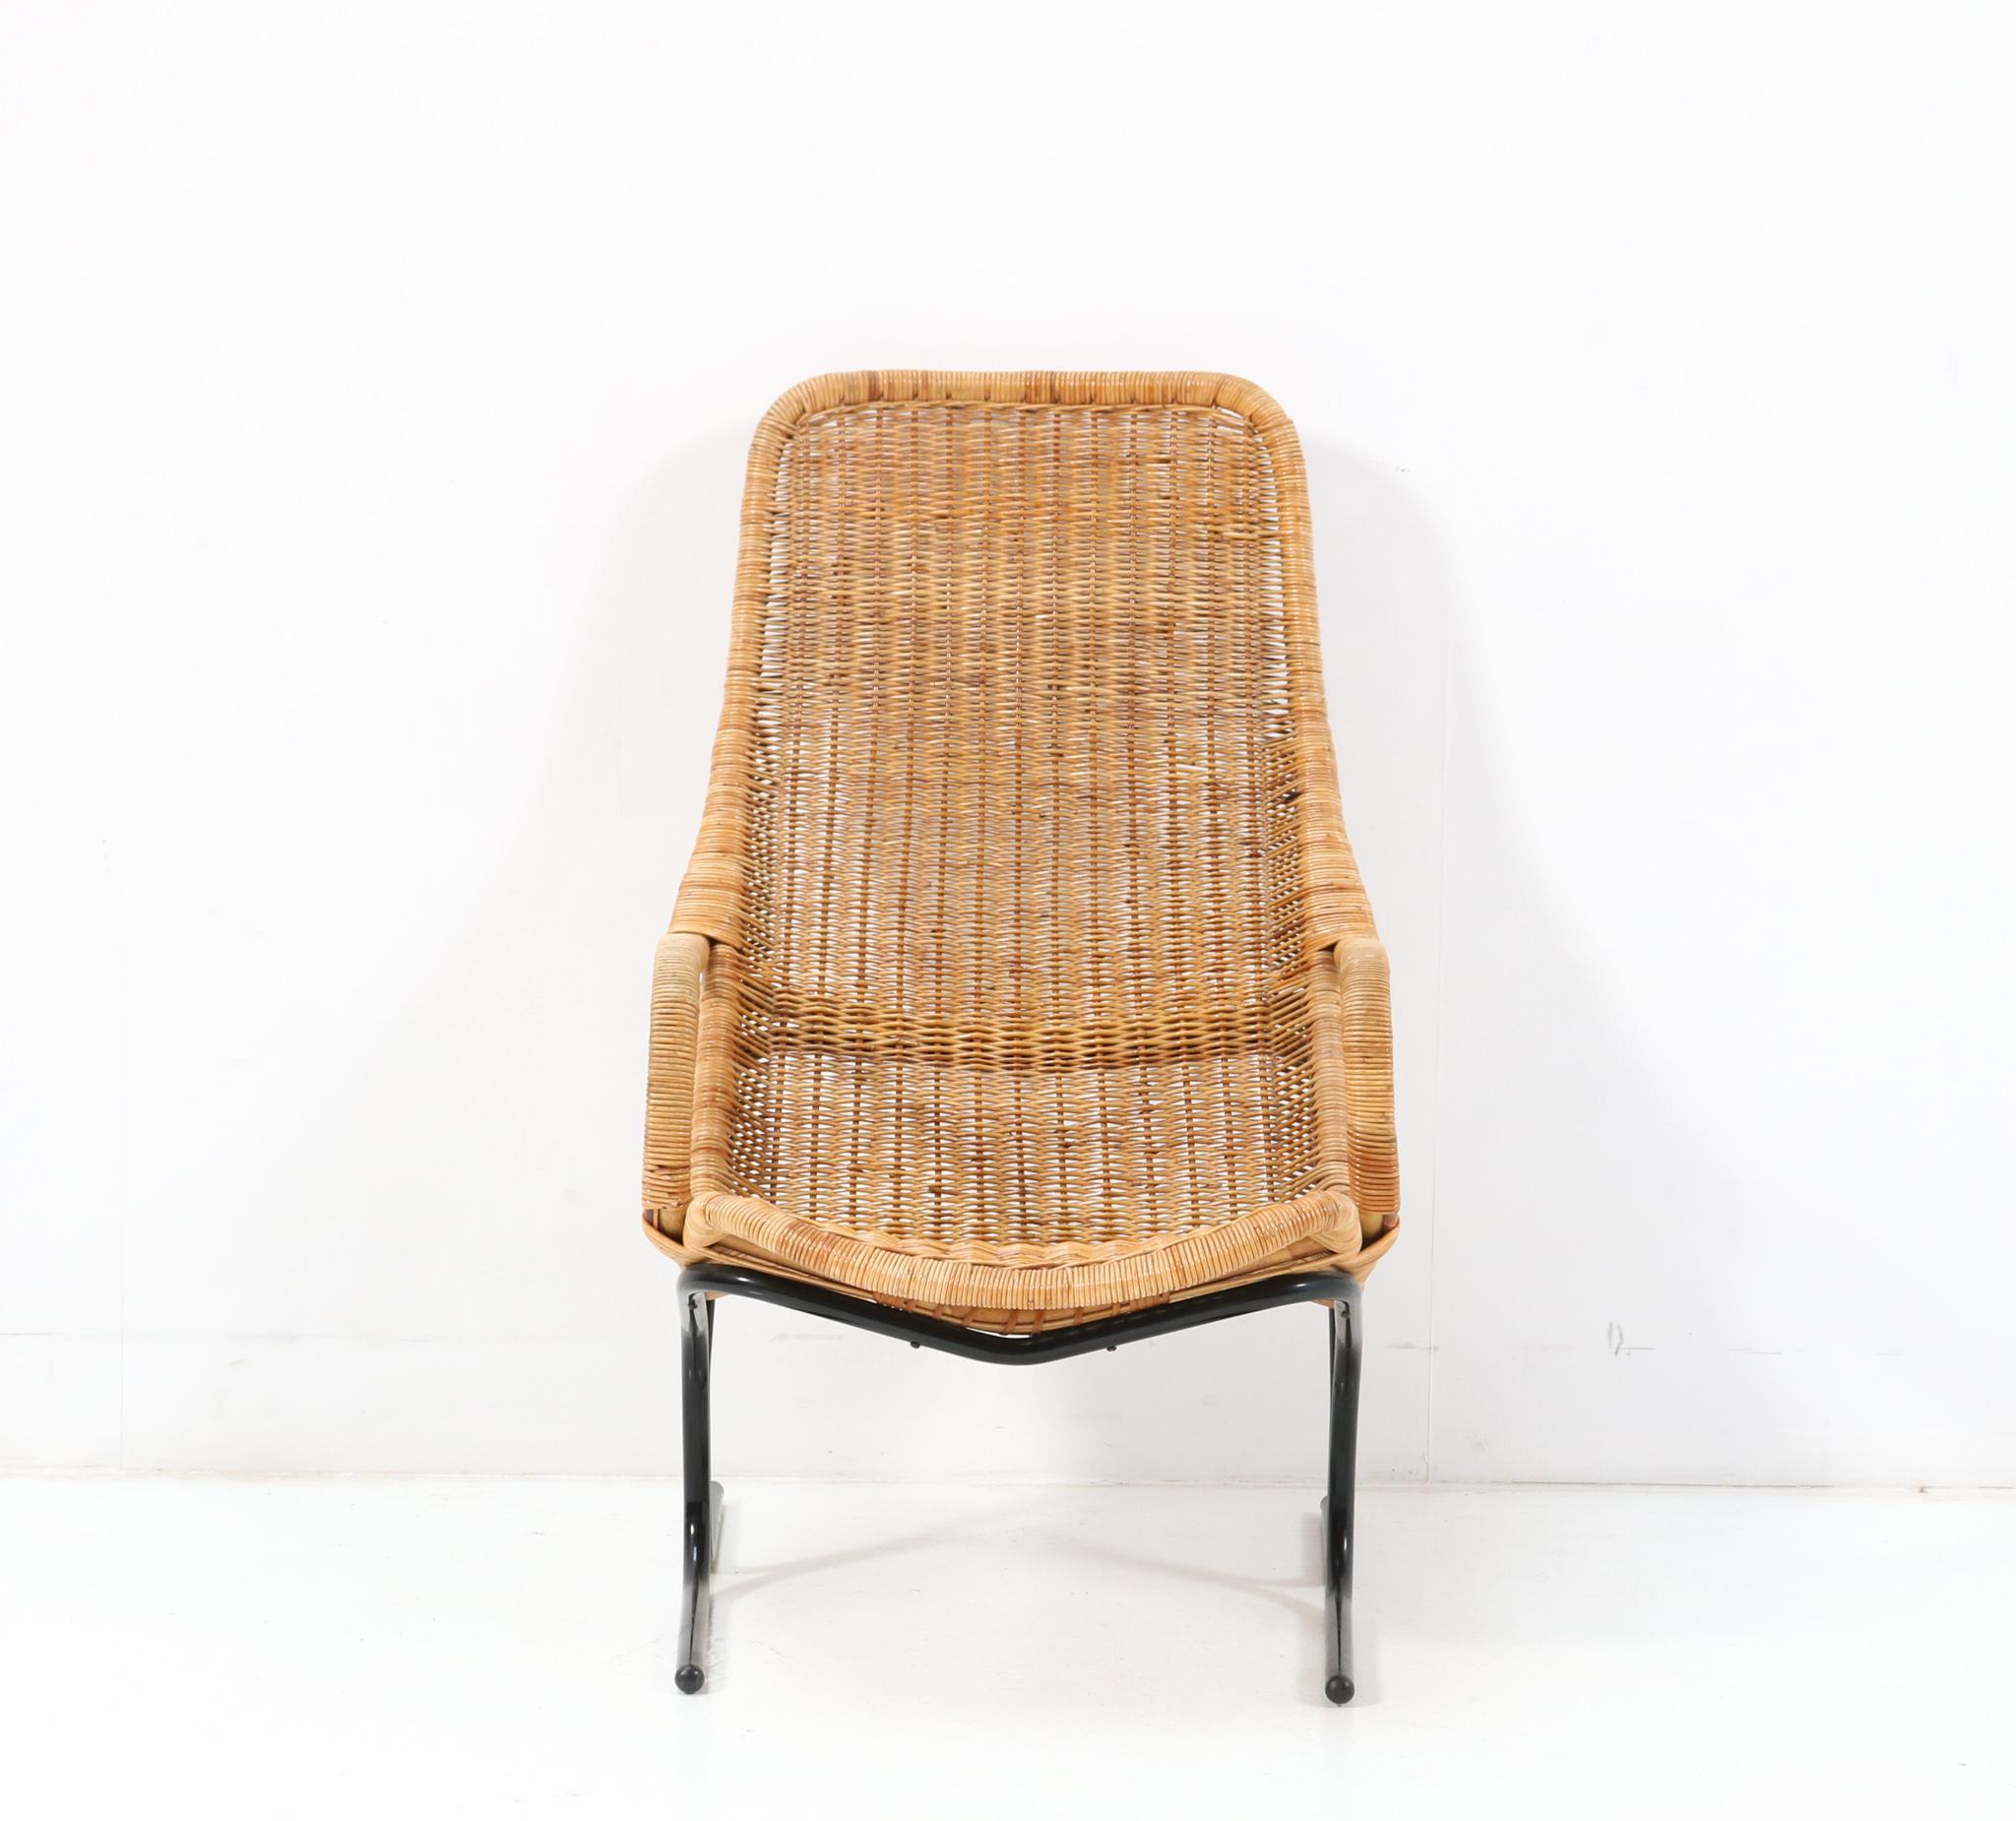 Atemberaubender Mid-Century Modern 514 Lounge Chair.
Entwurf von Dirk van Sliedrecht für Gebroeders Jonker Noordwolde.
Auffälliges niederländisches Design aus den 1960er Jahren.
Warmer, natürlicher Geflechtsitz auf dem originalen, schwarz